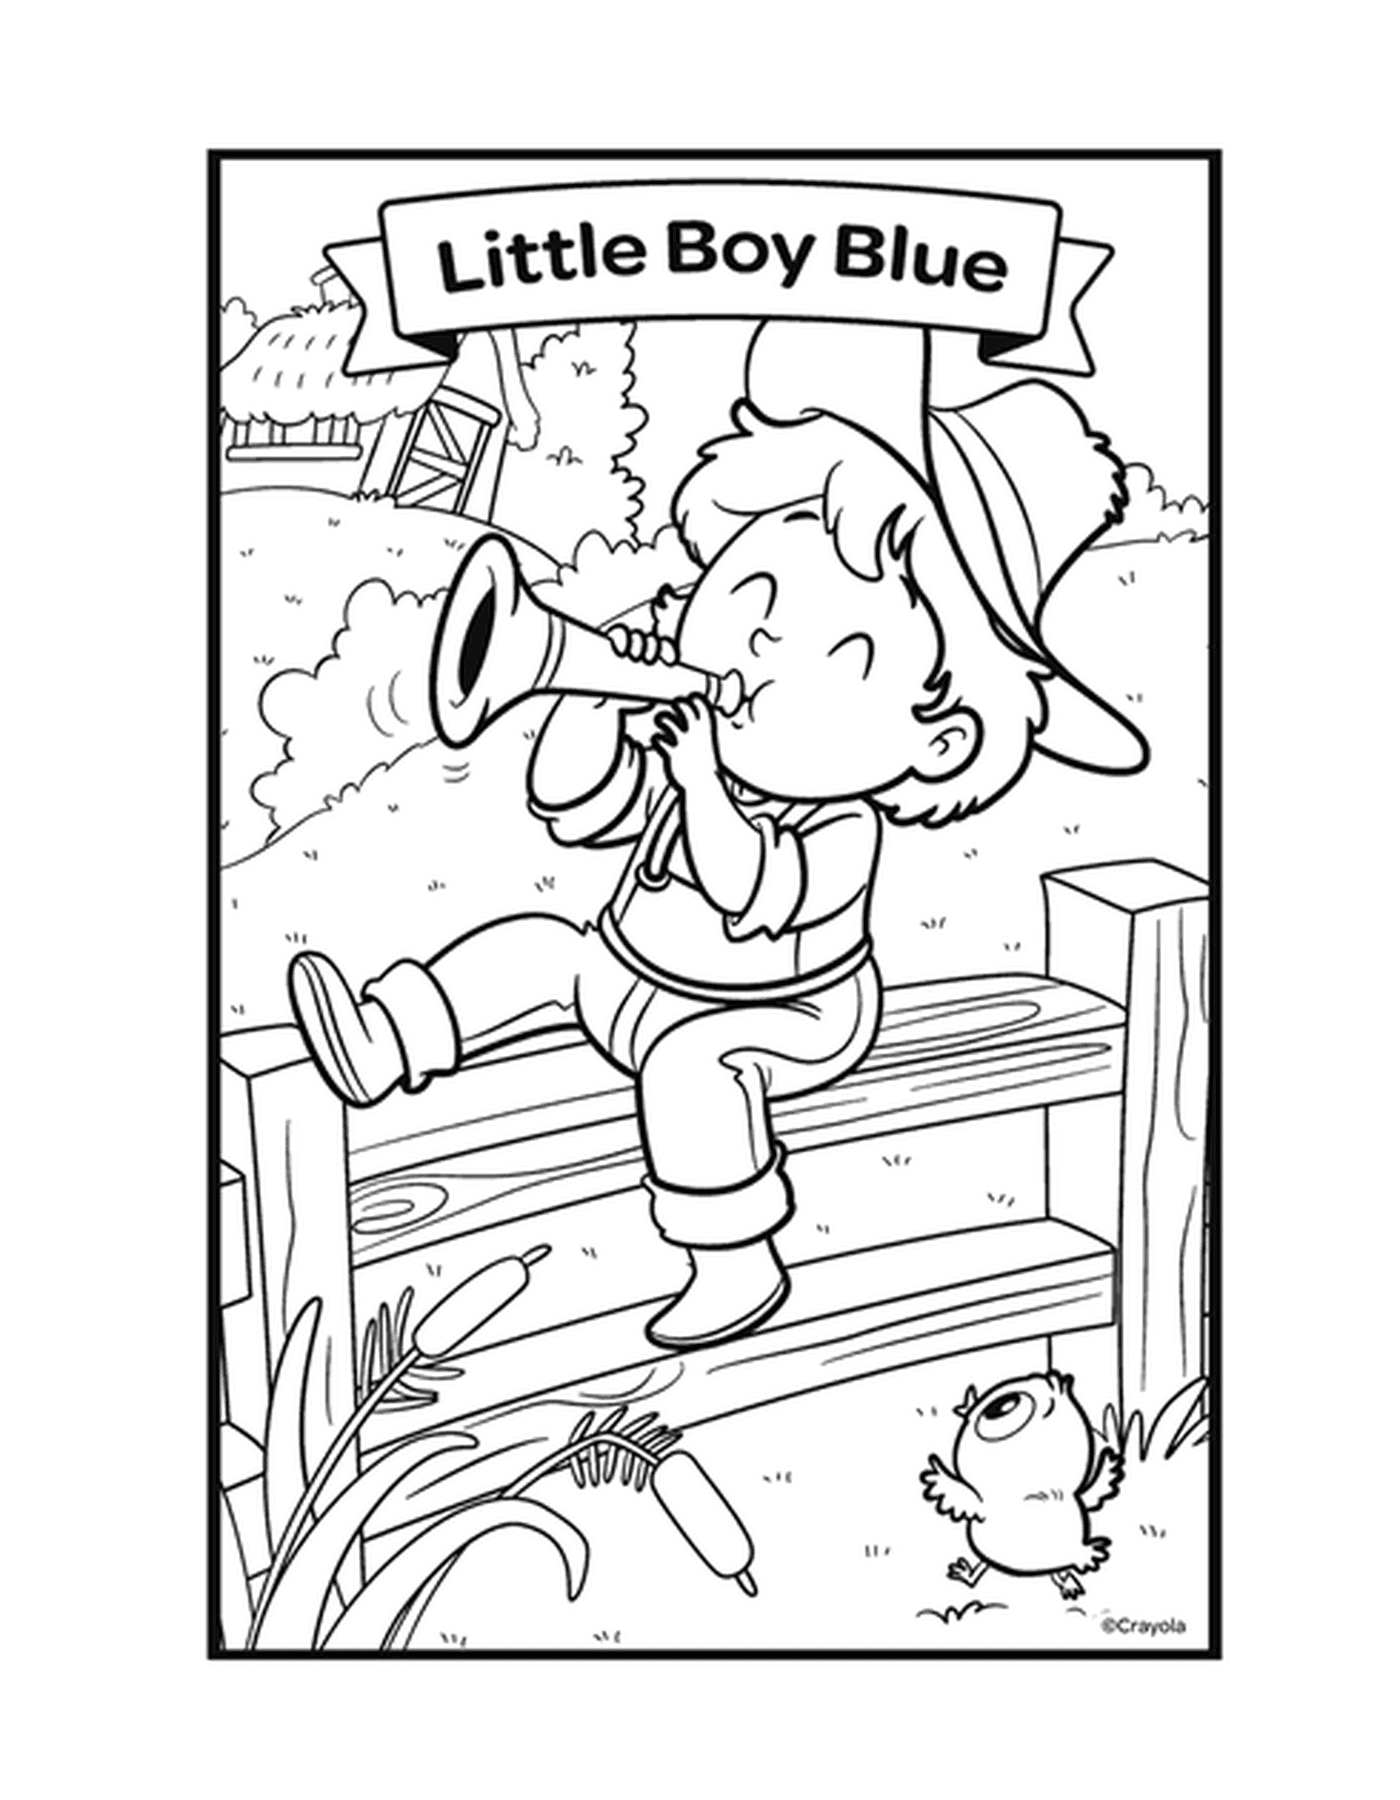  Der Reim Der kleine blaue Junge mit einem Jungen, der Trompete auf einer Bank spielt 